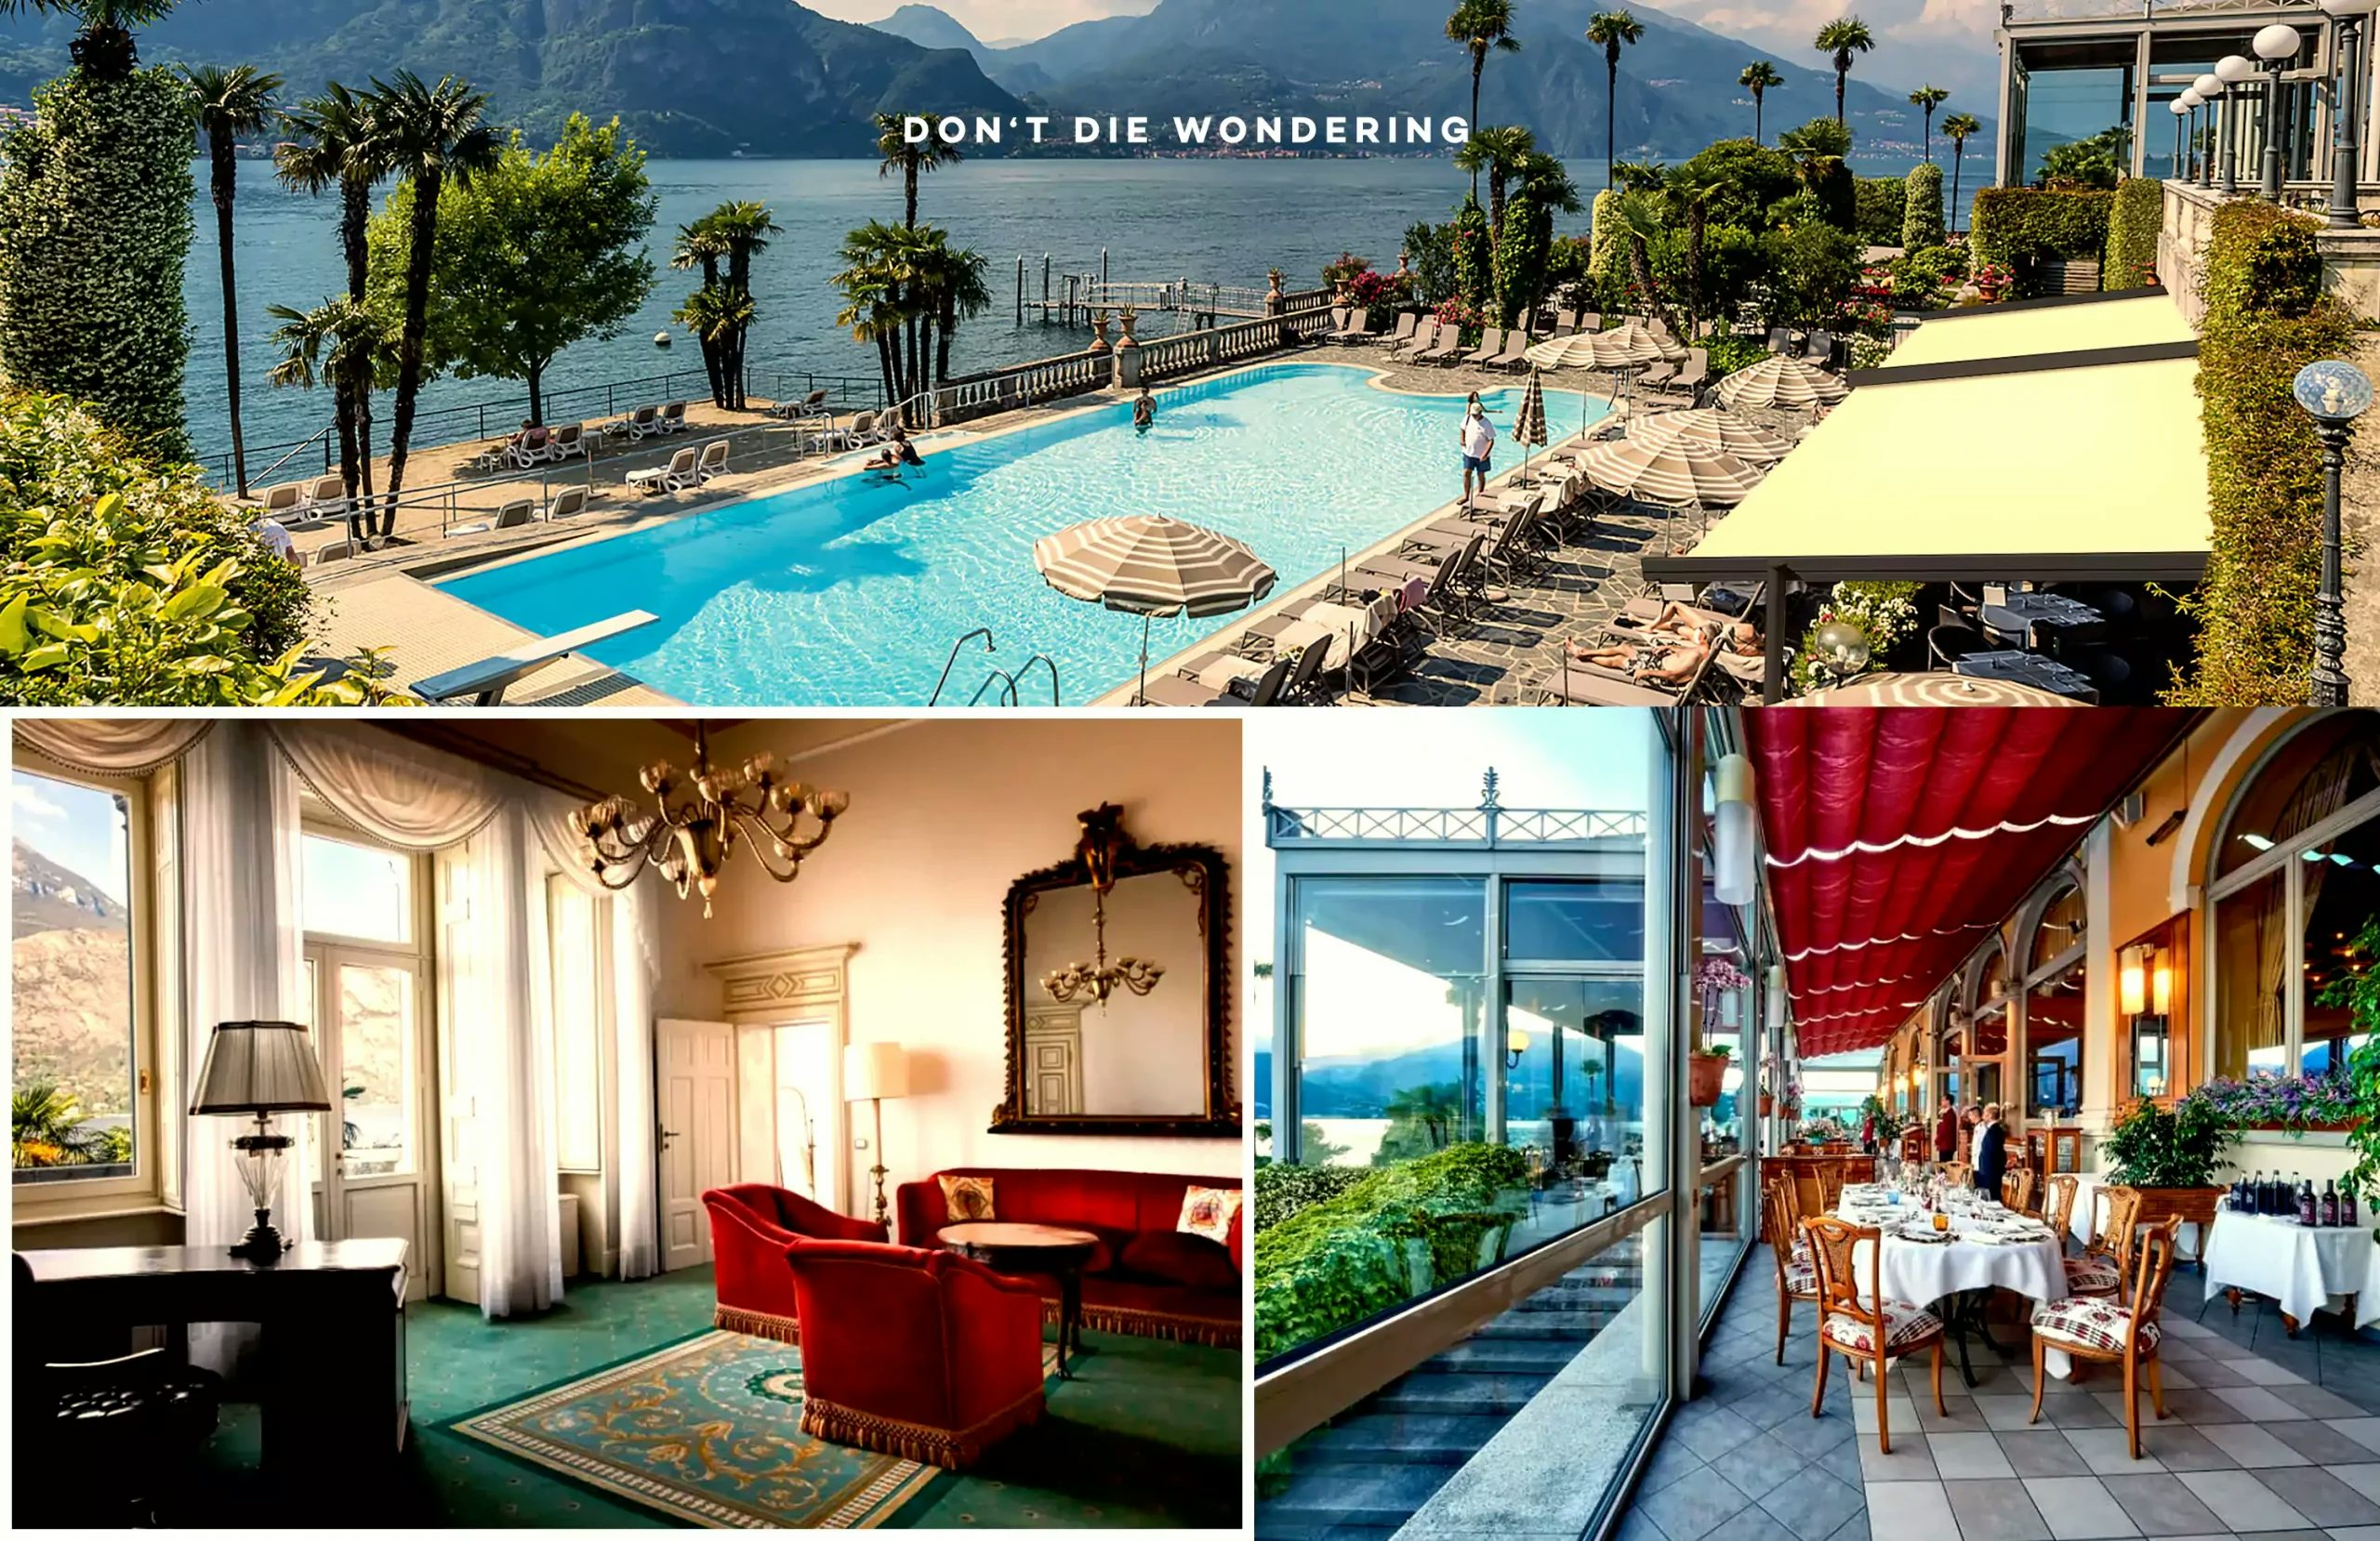 Grand Hotel Villa Serbelloni Is The il Meglio of Lake Como Italy